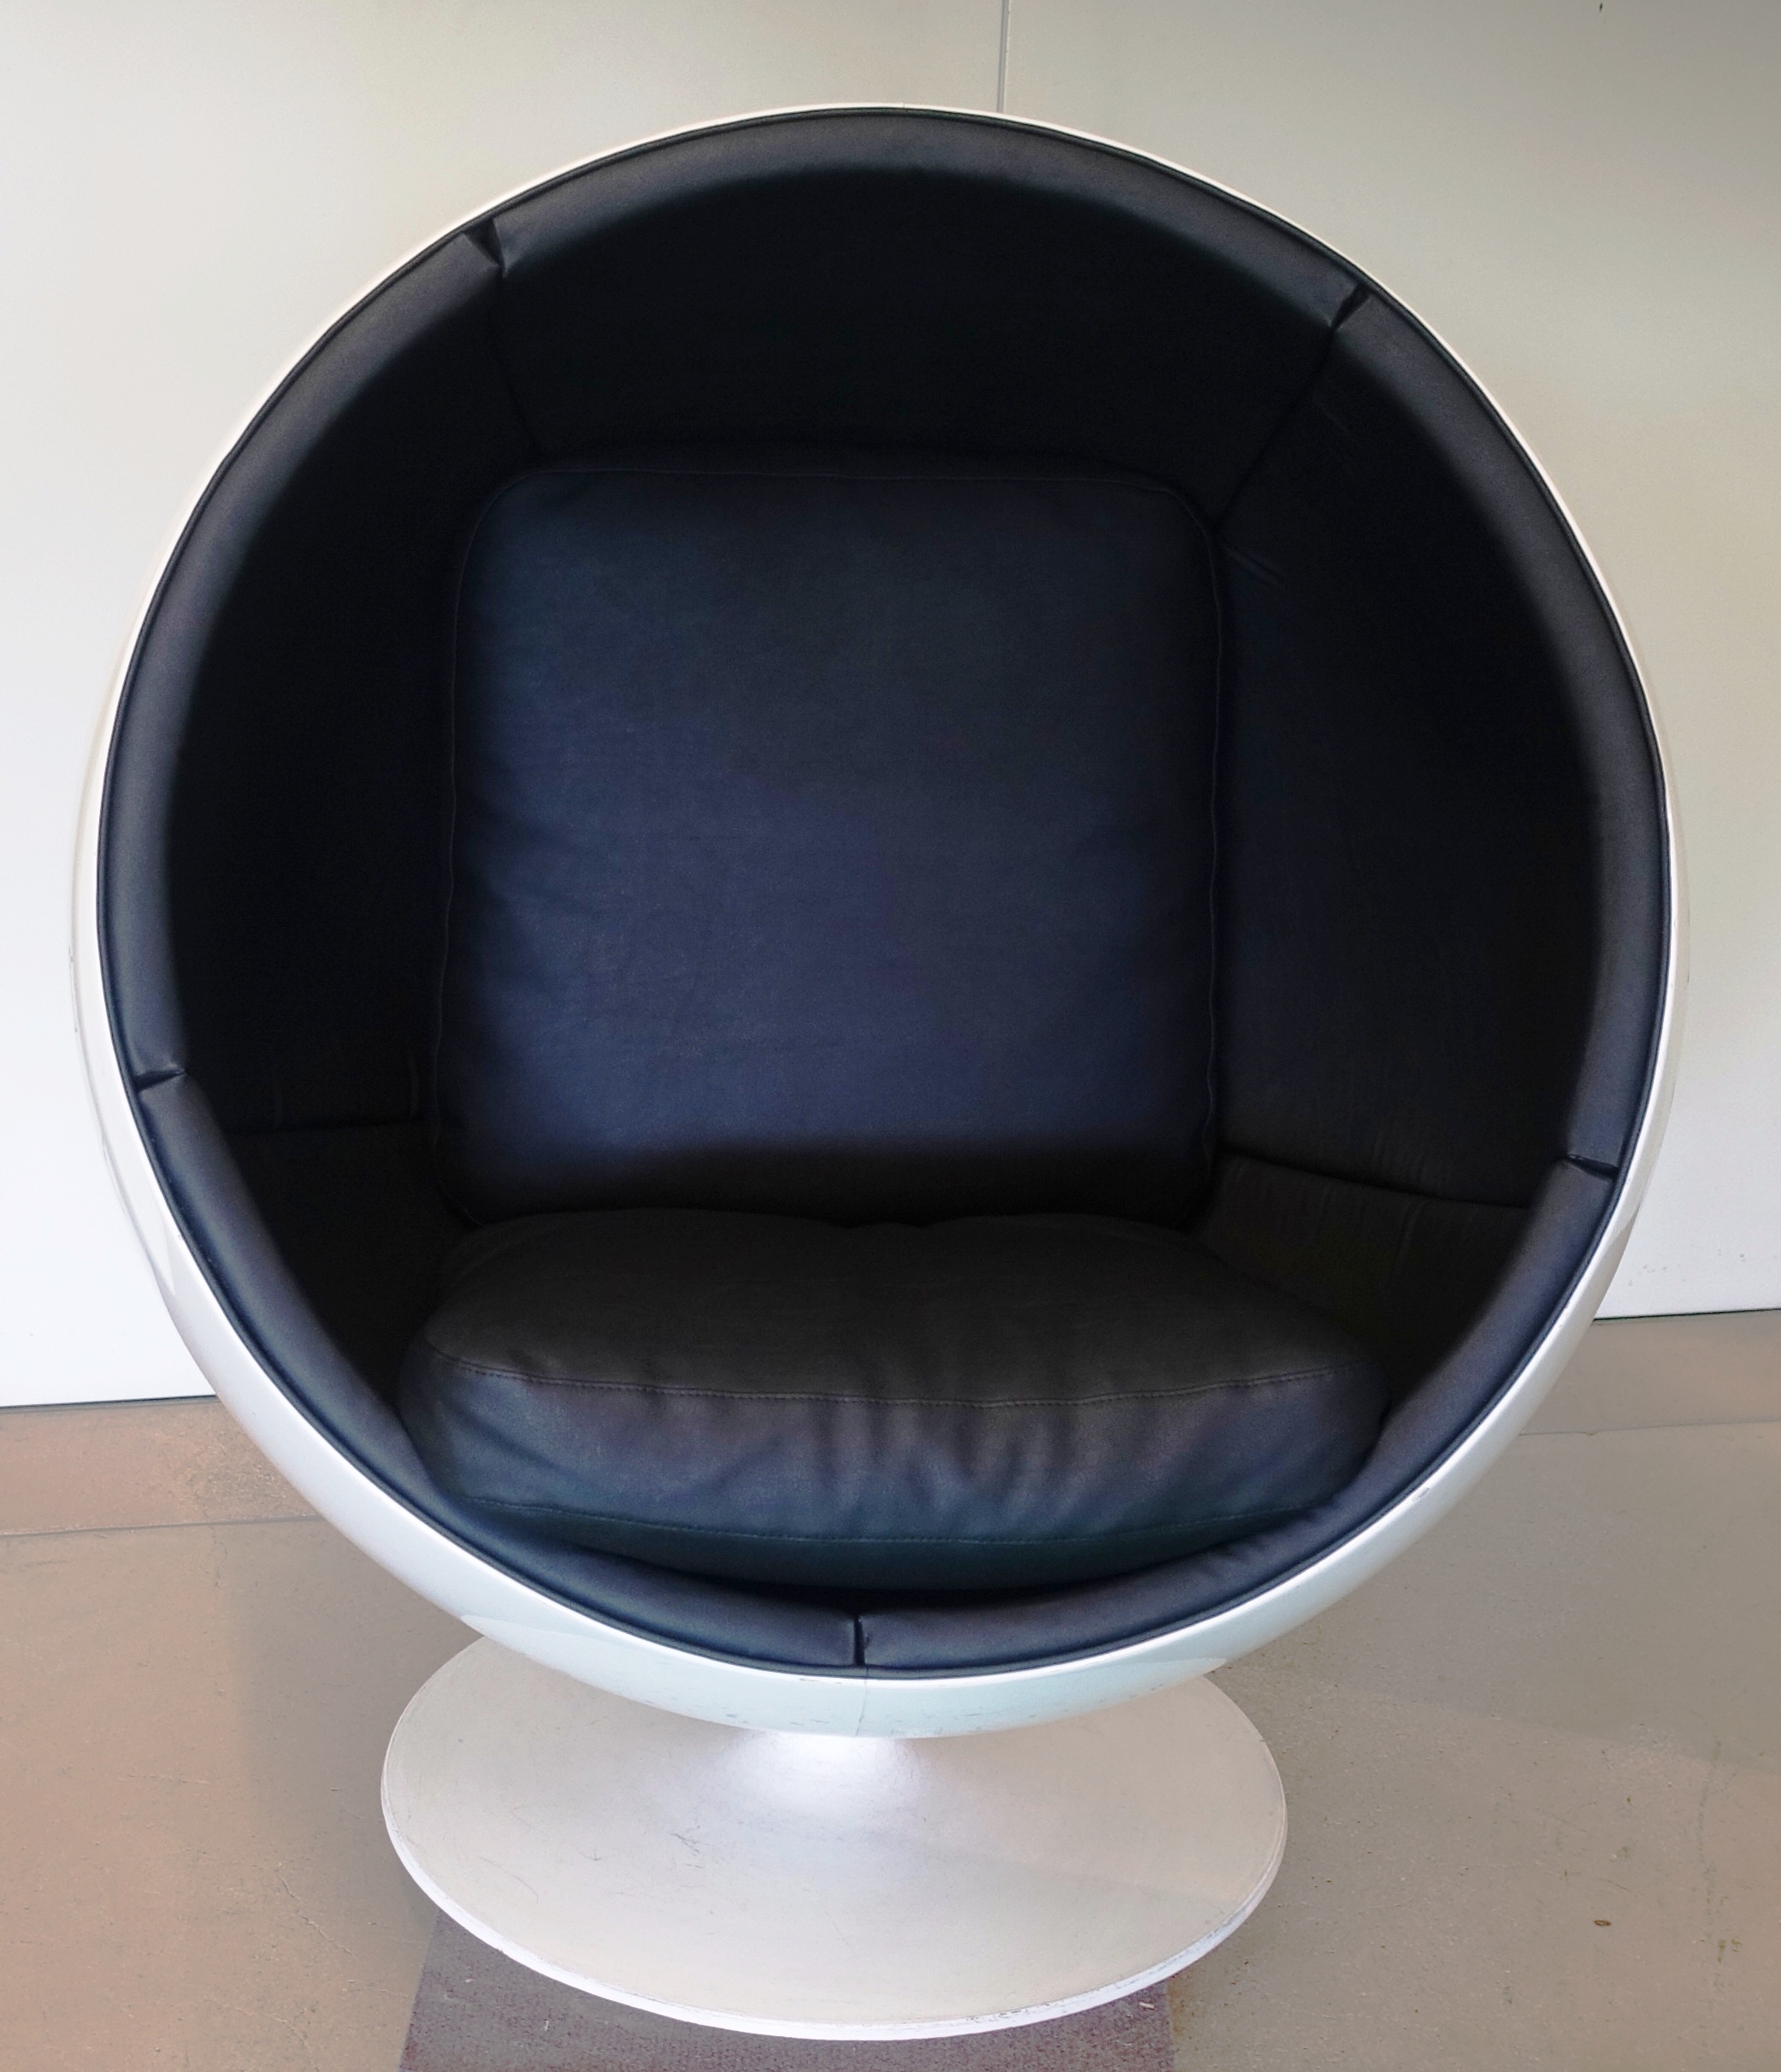 Kugelstuhl – globe chair DAS ORIGINAL!